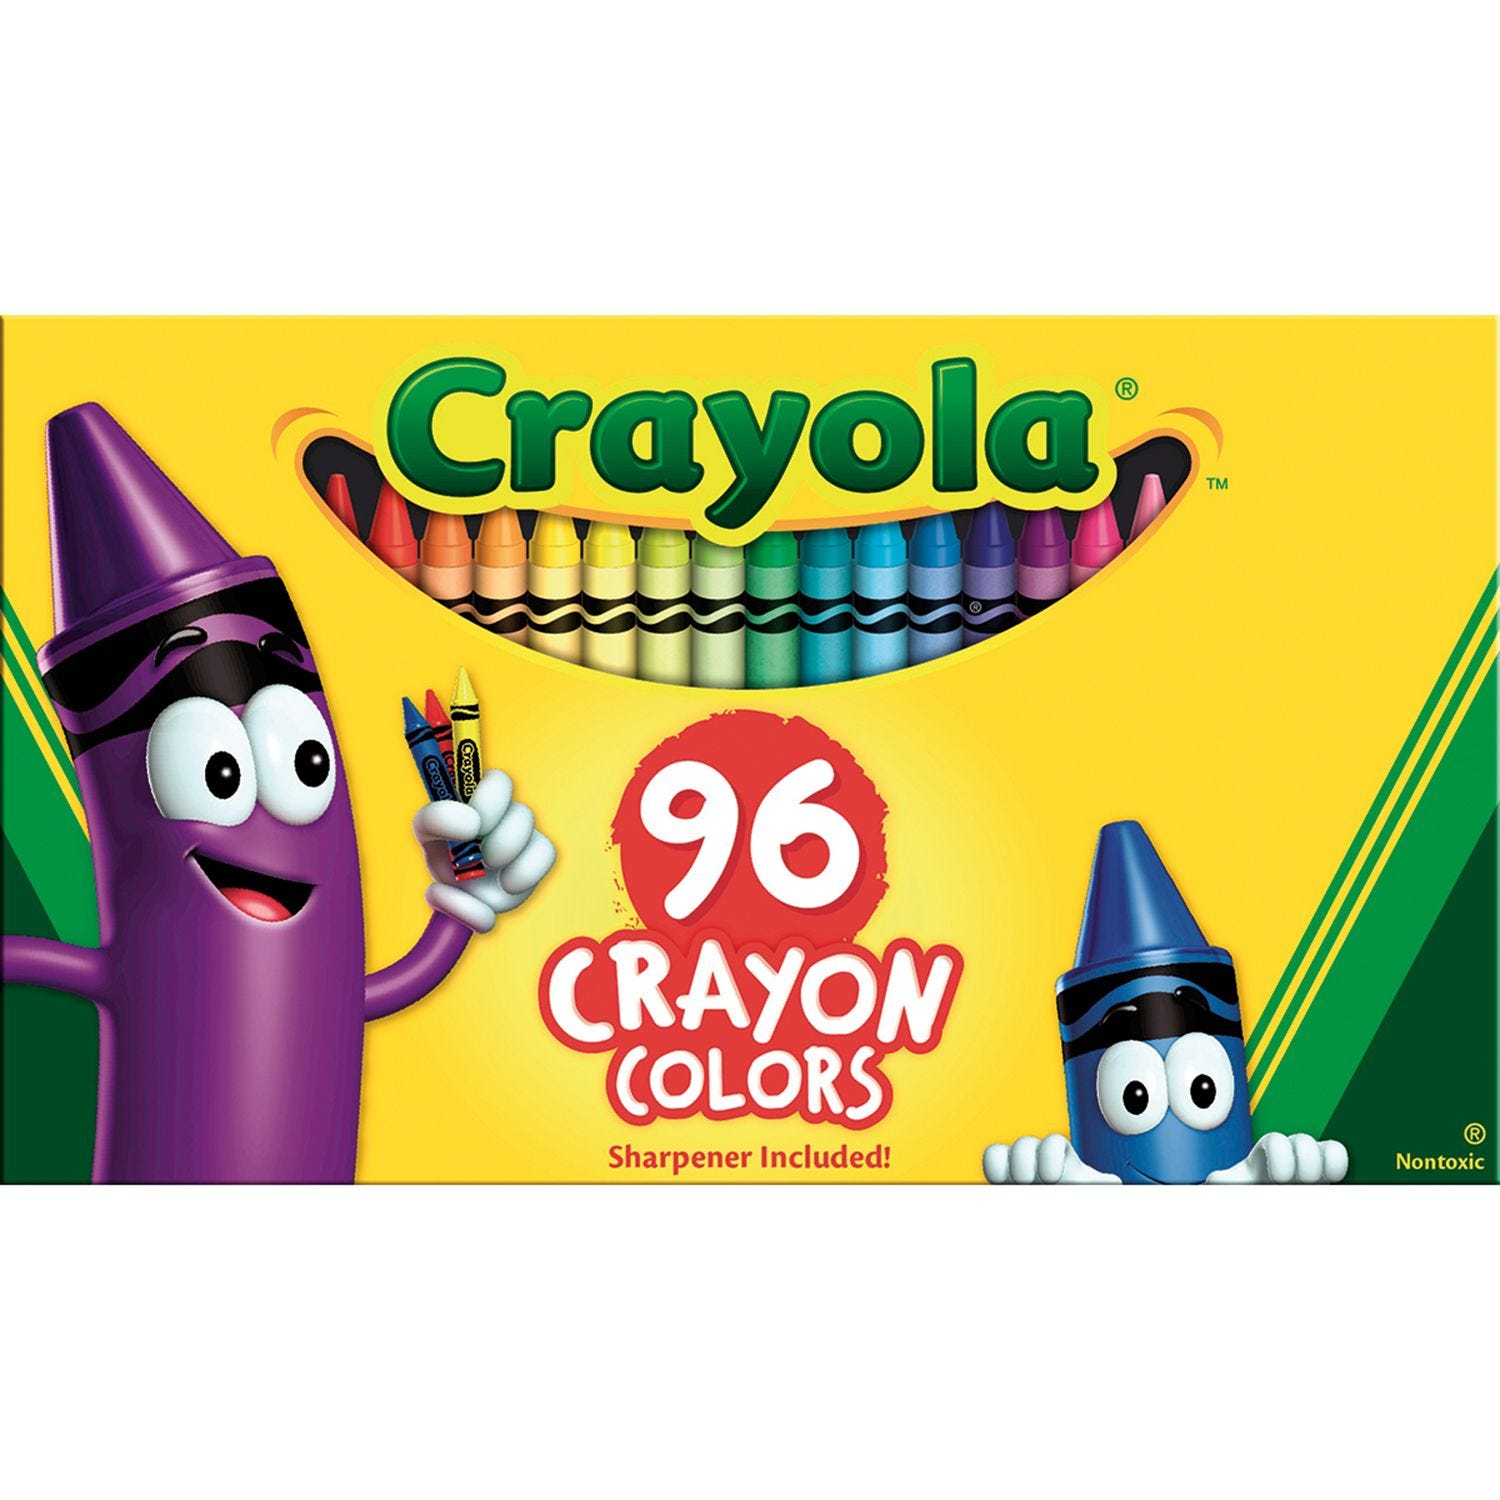 Crayola Small Storage Tin, The Tin Box Company of America